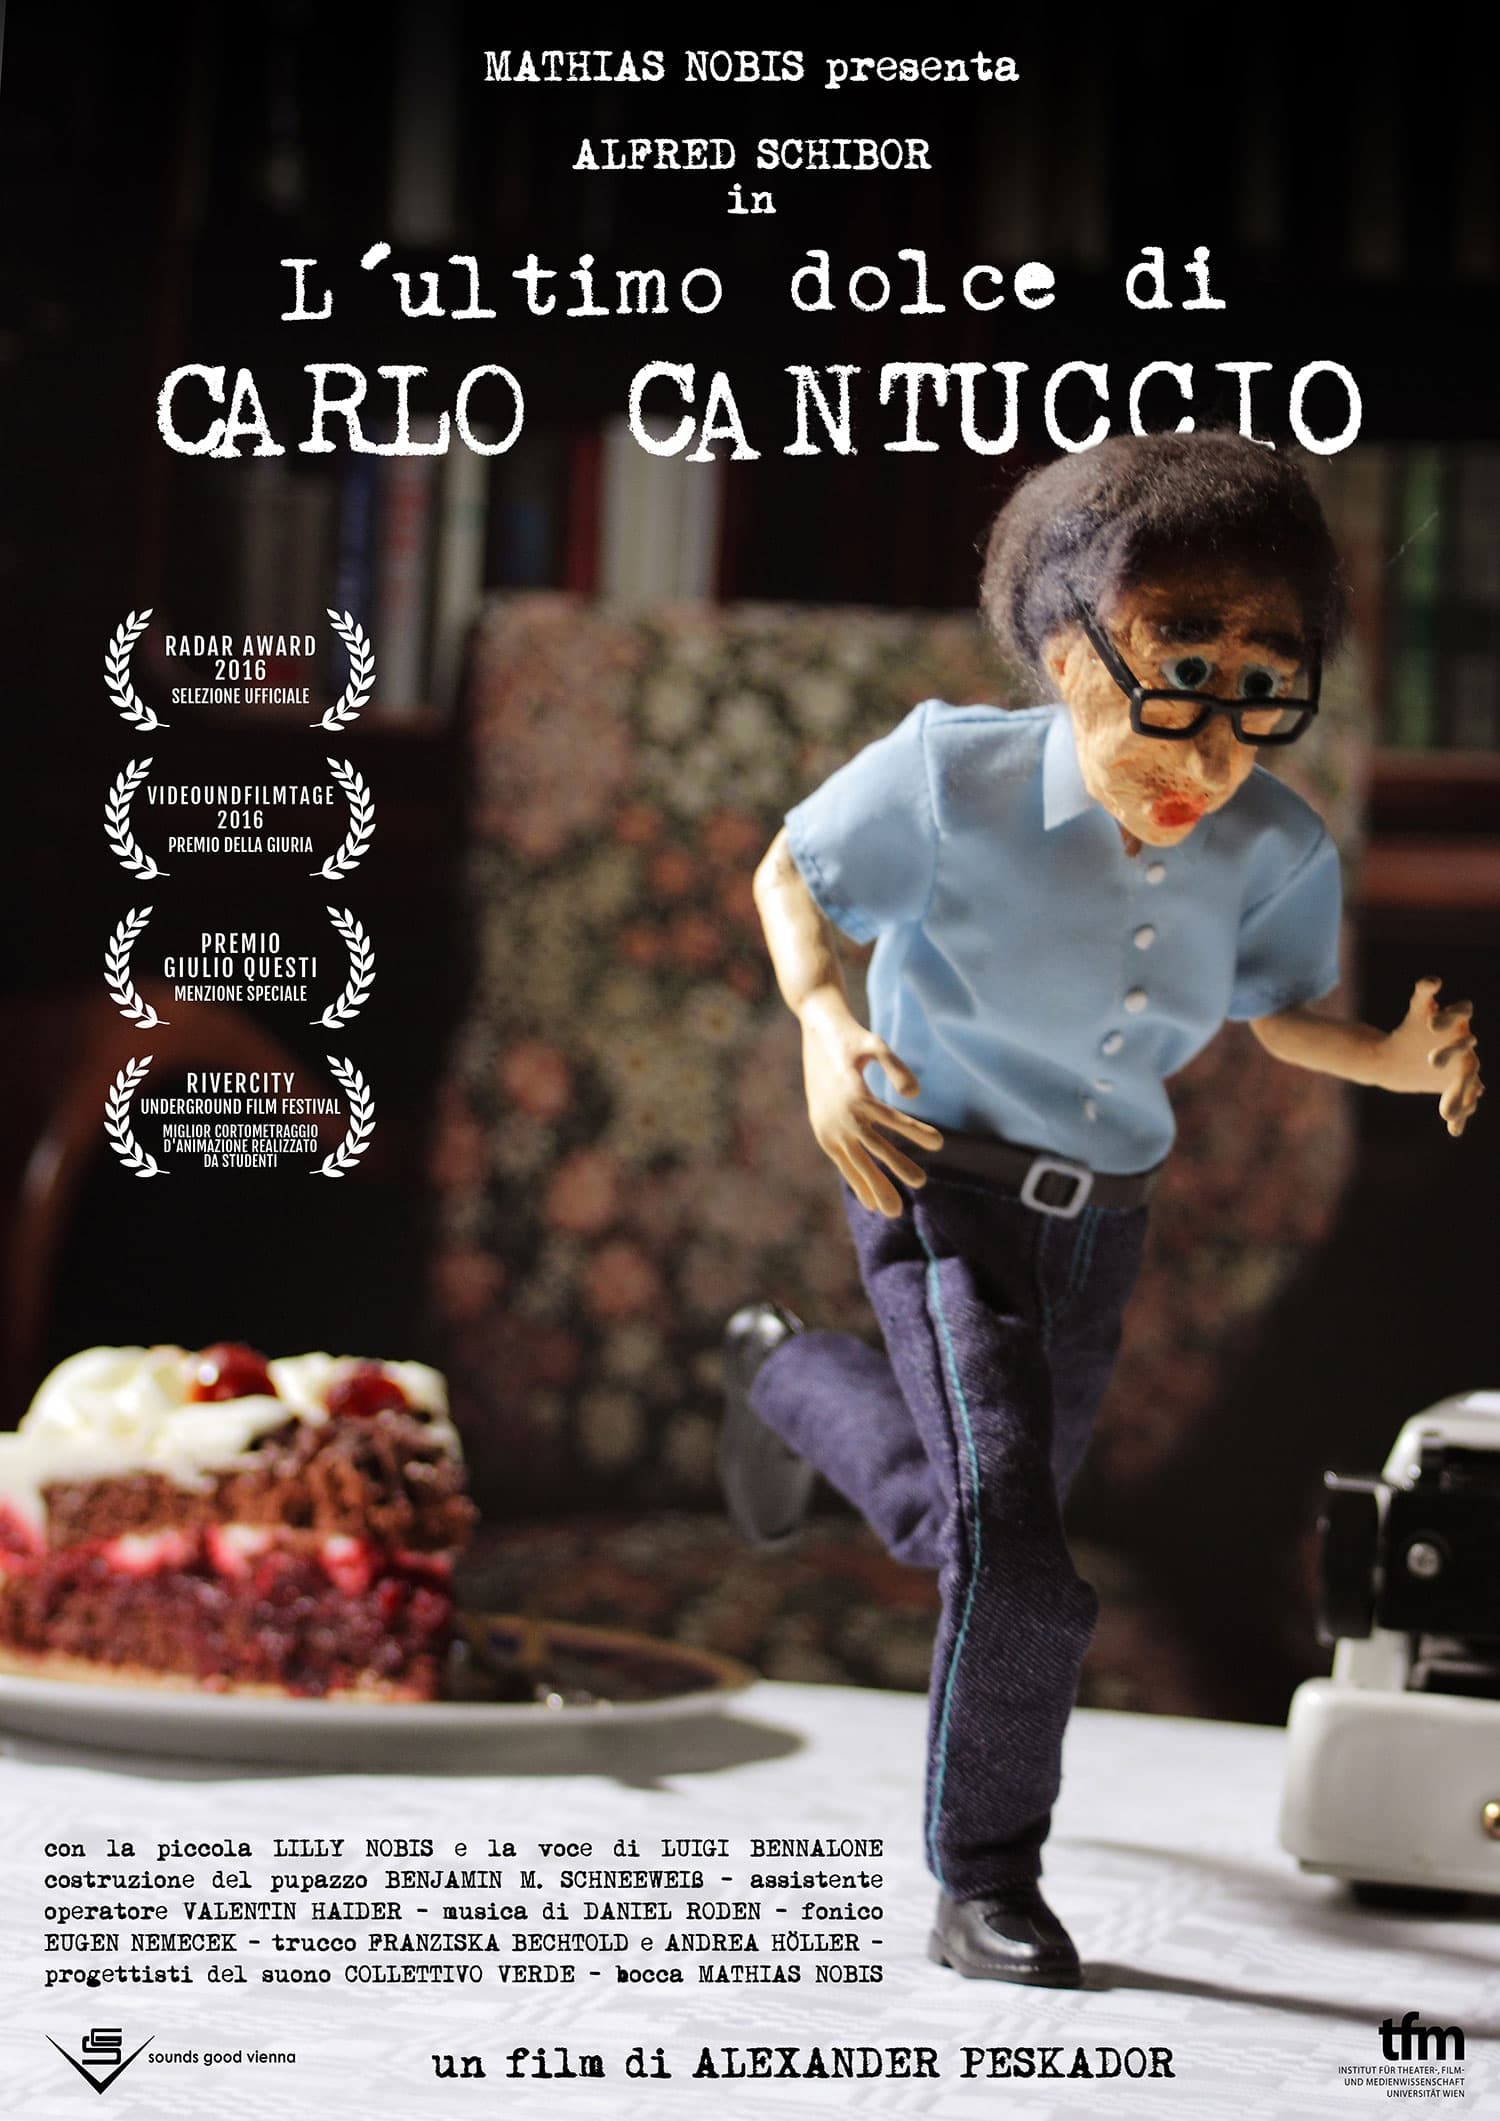 The Last Cake of Carlo Cantuccio